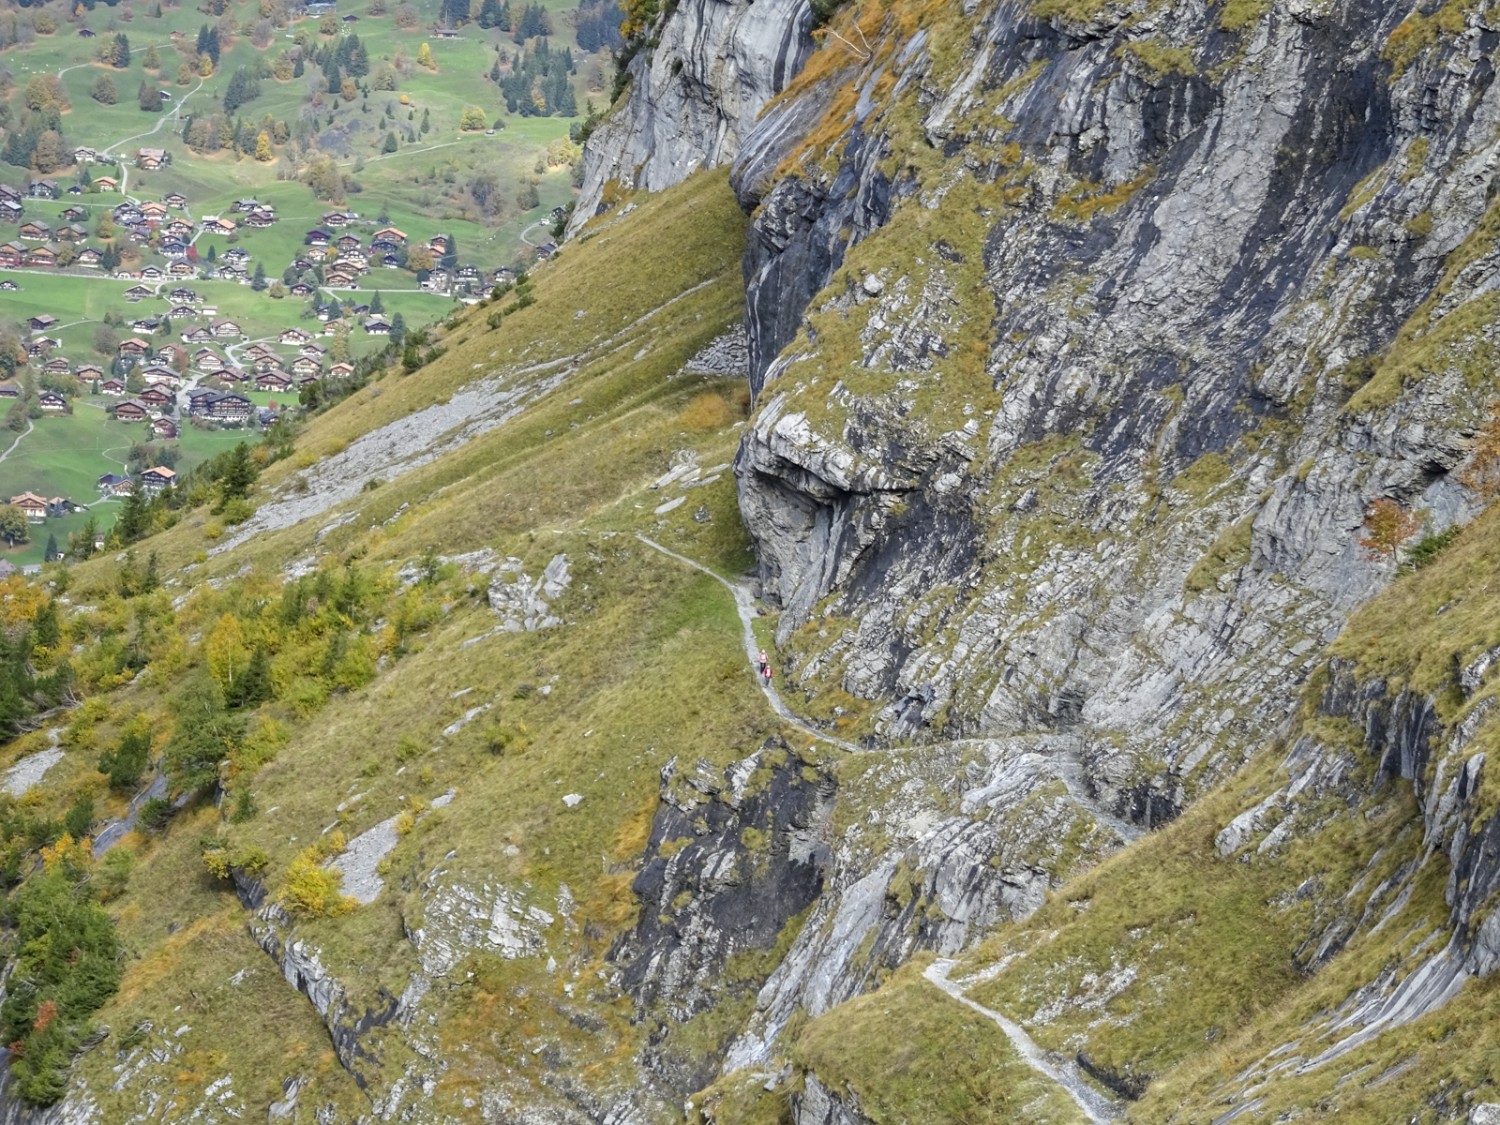 Le chemin de randonnée serpente le long des rochers jusqu’à l’auberge du Bäregg. Photo: Sabine Joss